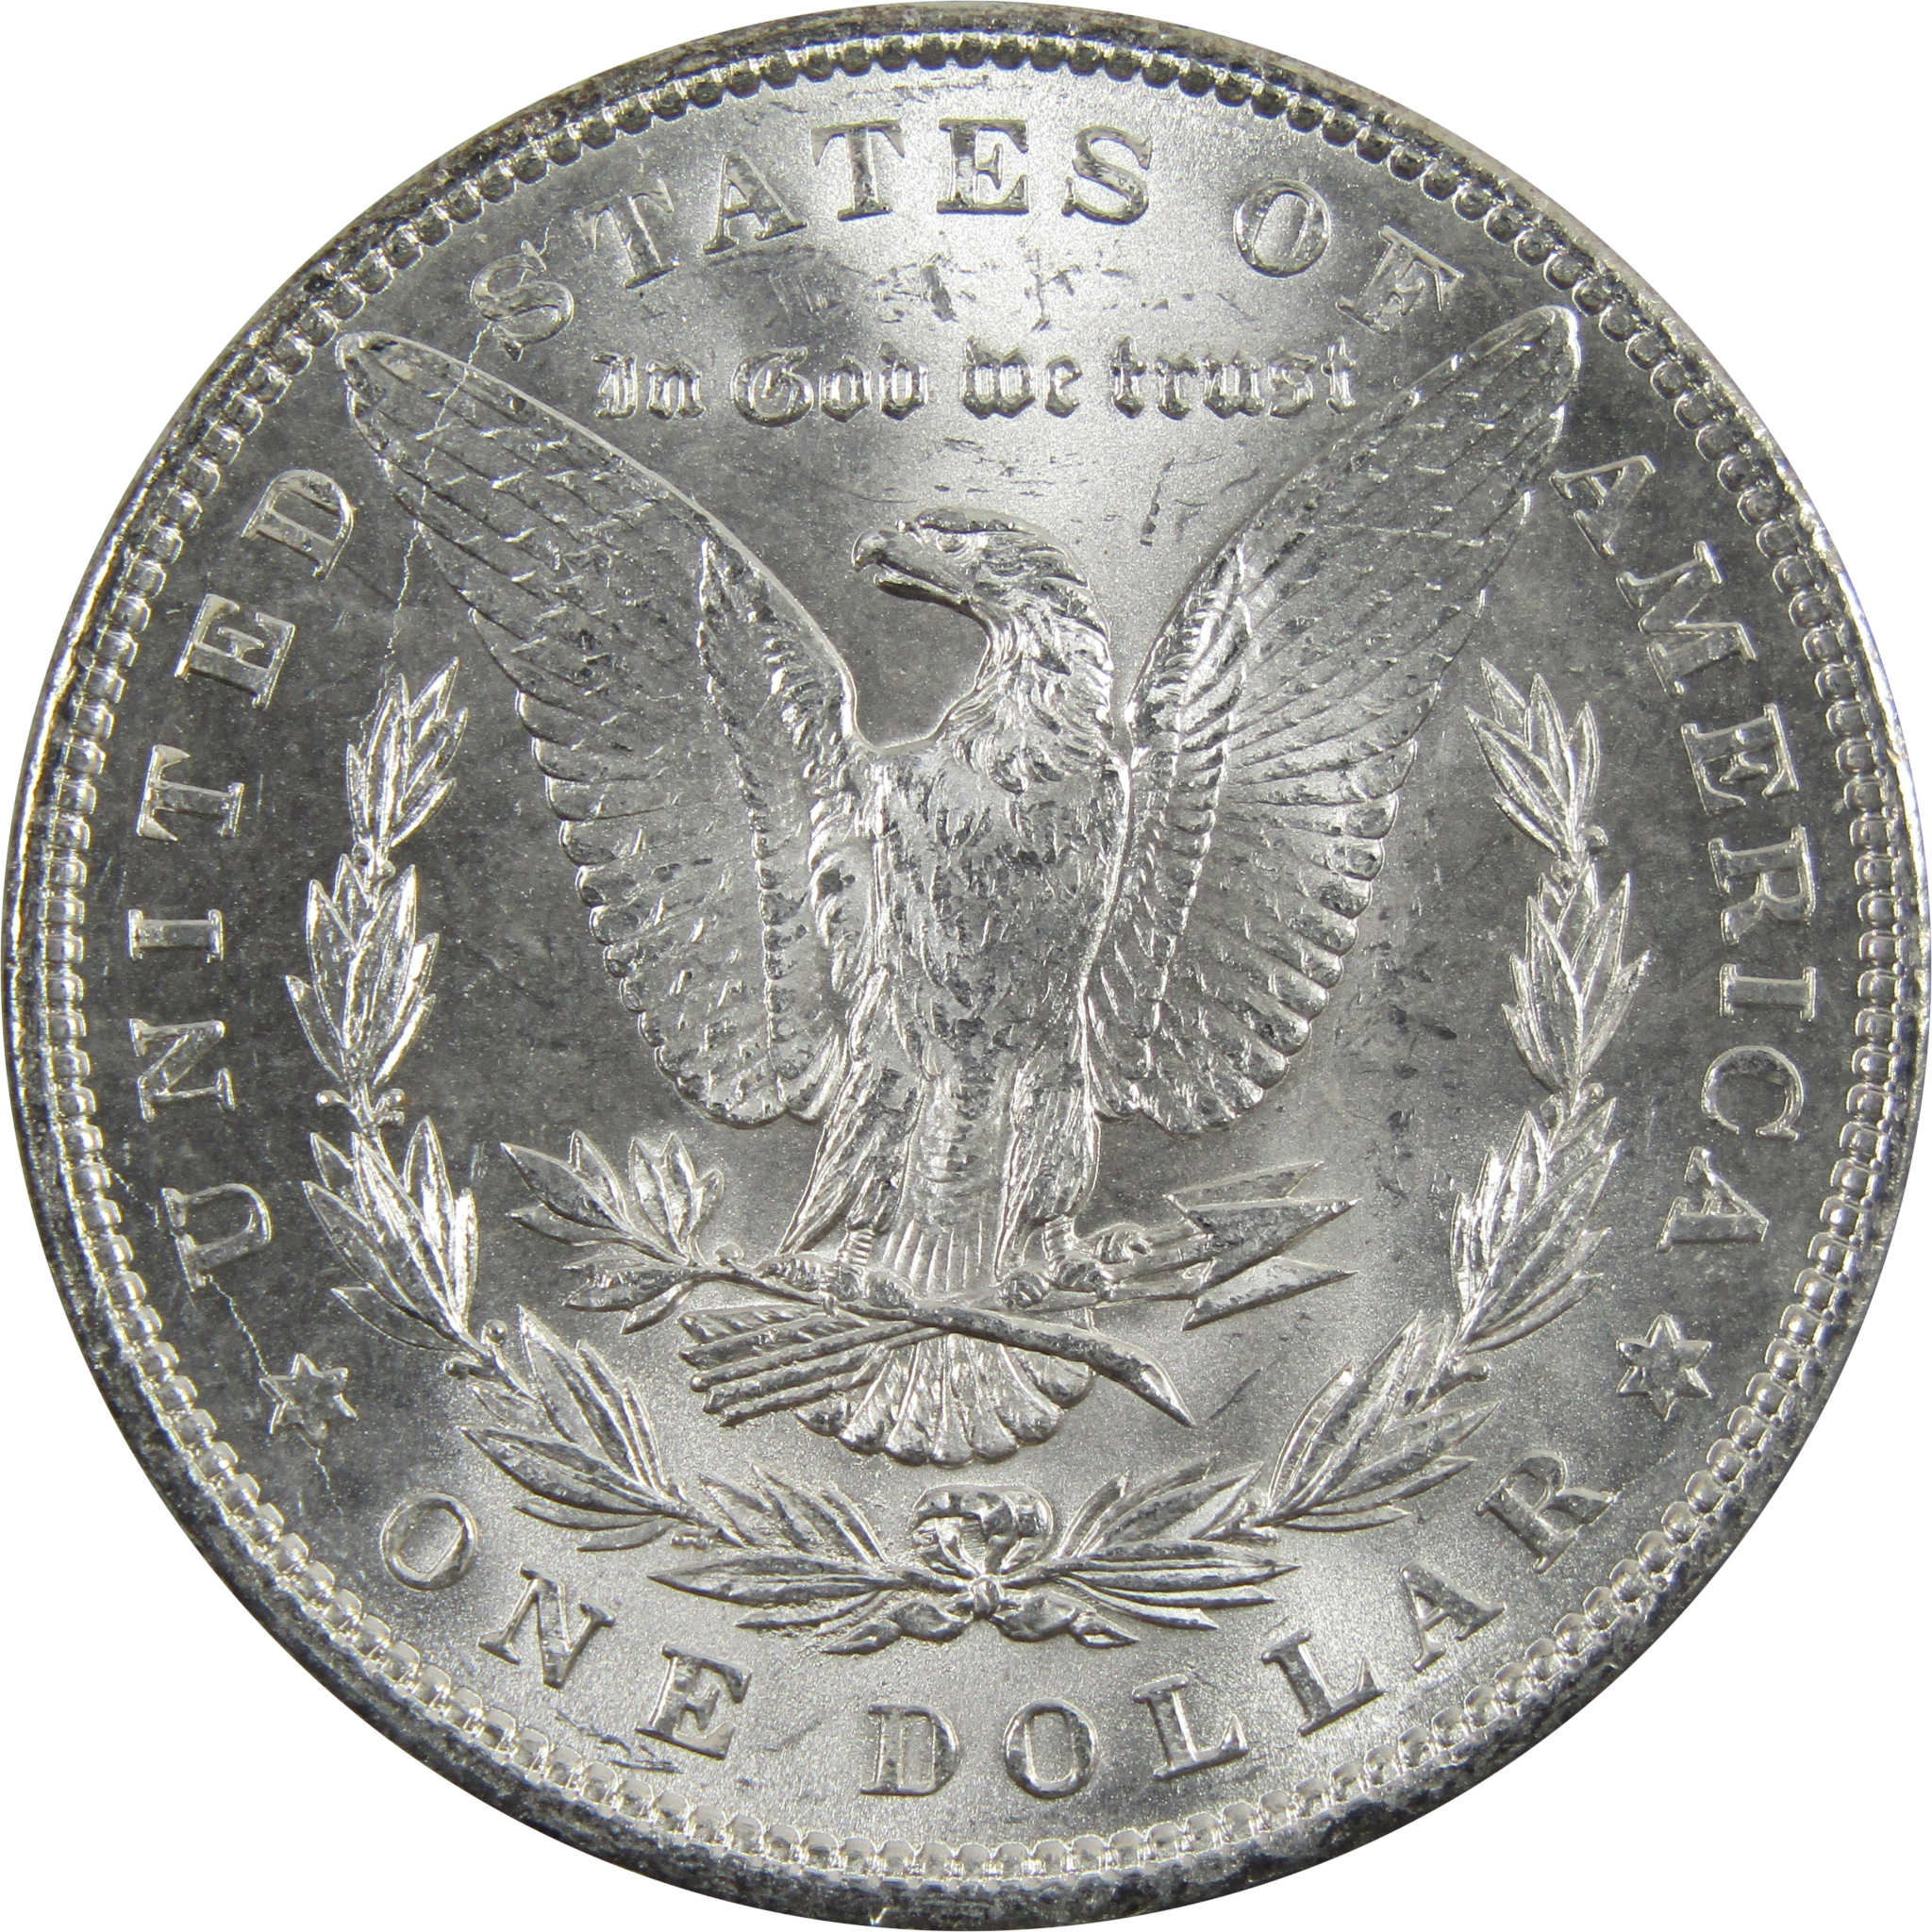 1897 Morgan Dollar BU Uncirculated 90% Silver $1 Coin SKU:I5153 - Morgan coin - Morgan silver dollar - Morgan silver dollar for sale - Profile Coins &amp; Collectibles